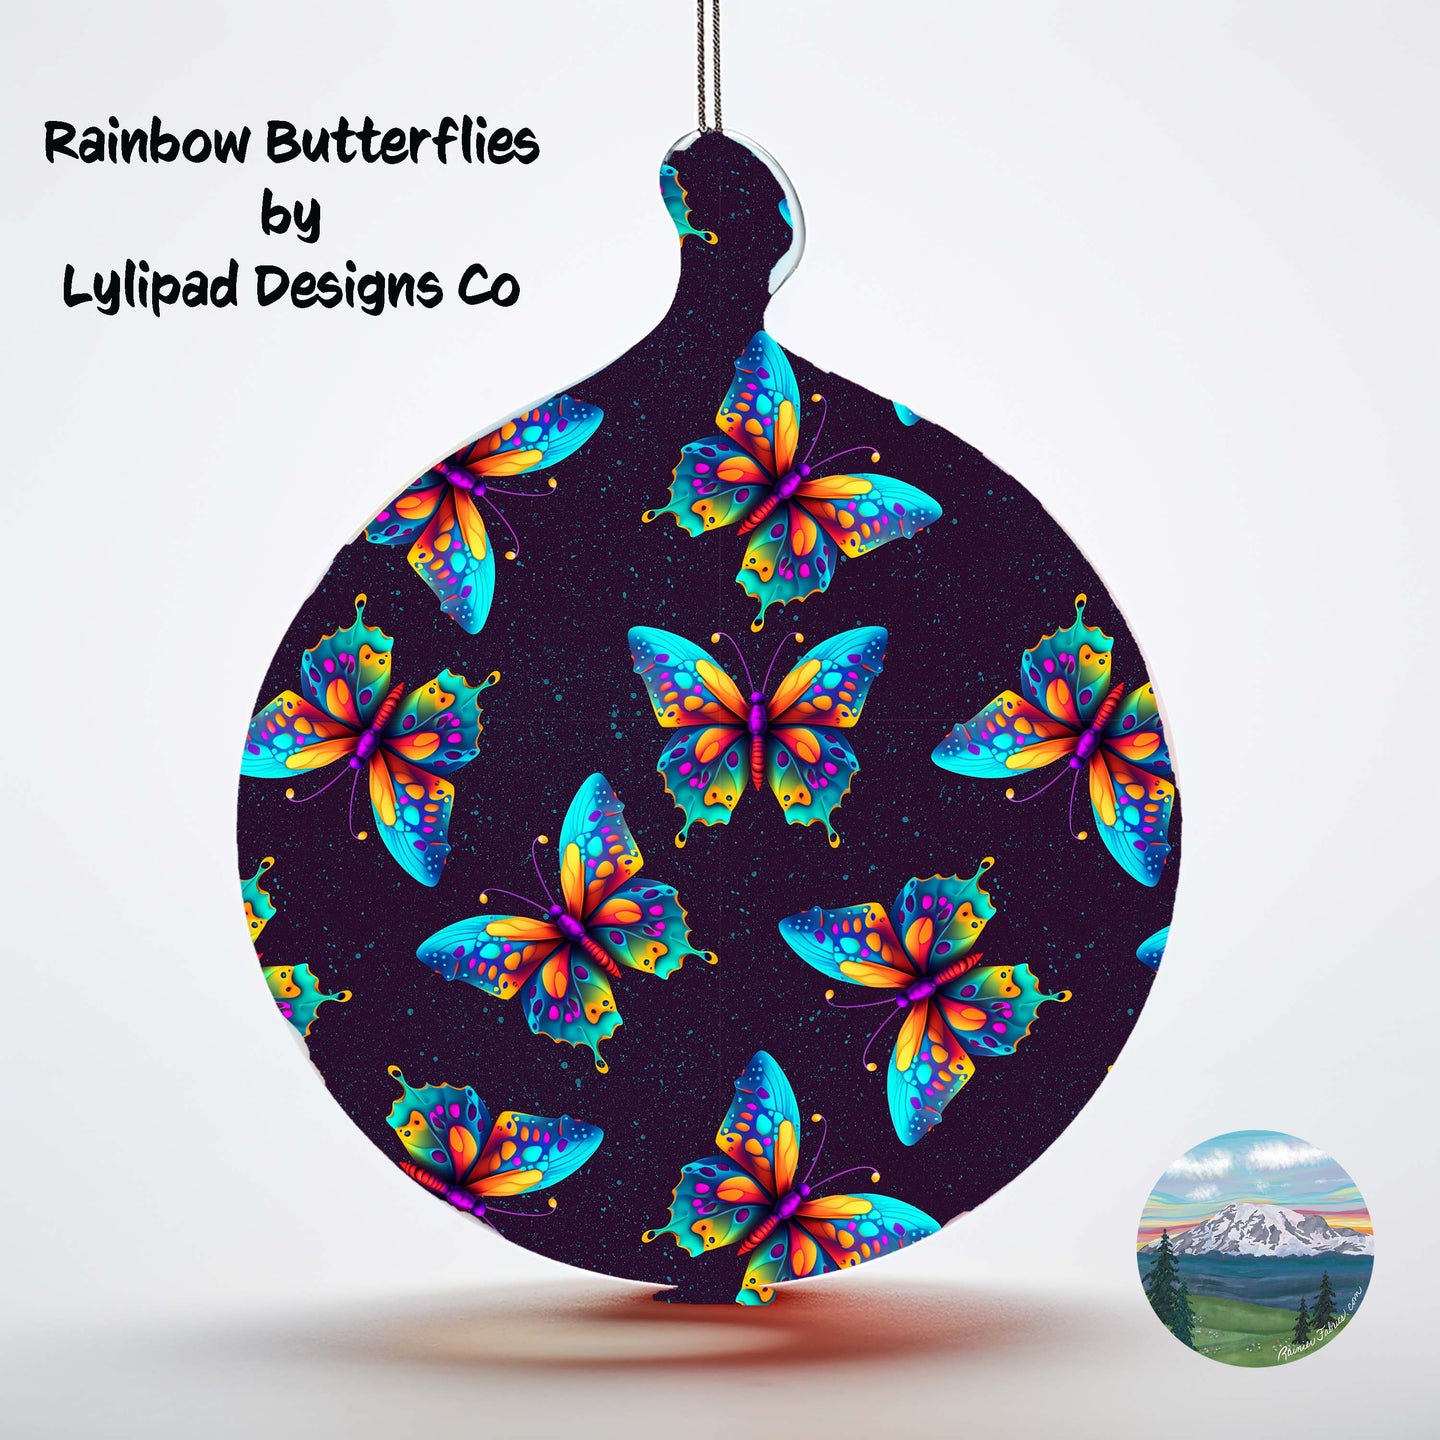 Rainbow Butterflies by Lylipad Designs Co